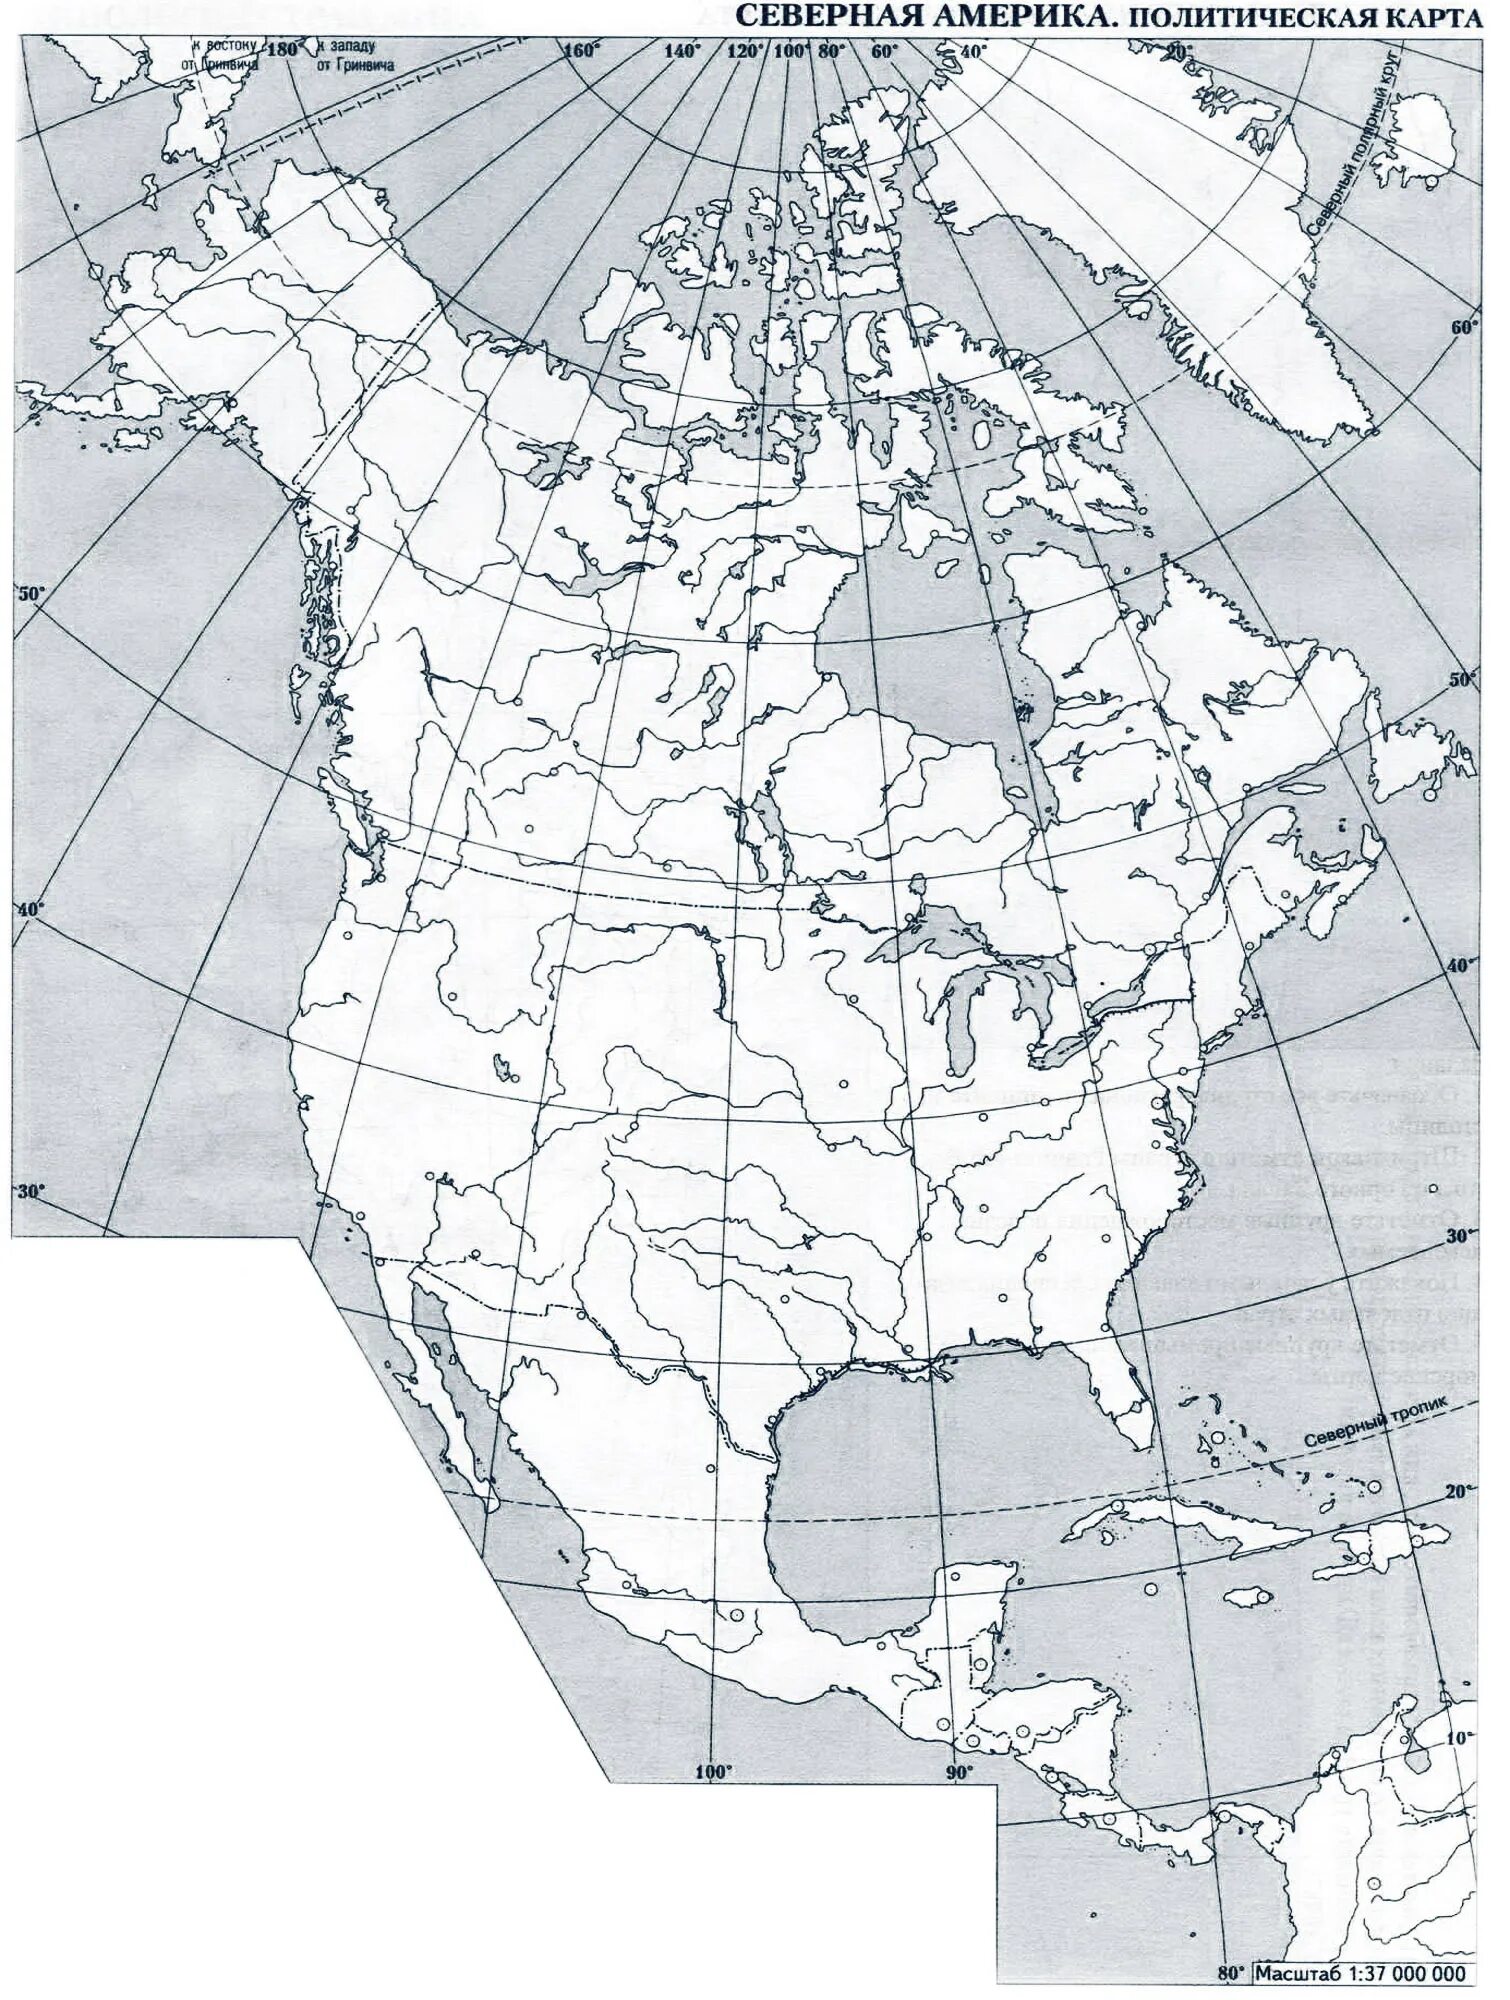 Тест по теме северная америка 2 вариант. Физическая карта Северной Америки контурная карта. Пустая карта Северной Америки. Карта Северной Америки контурная карта 7 класс. Политическая контурная карта Северной Америки.